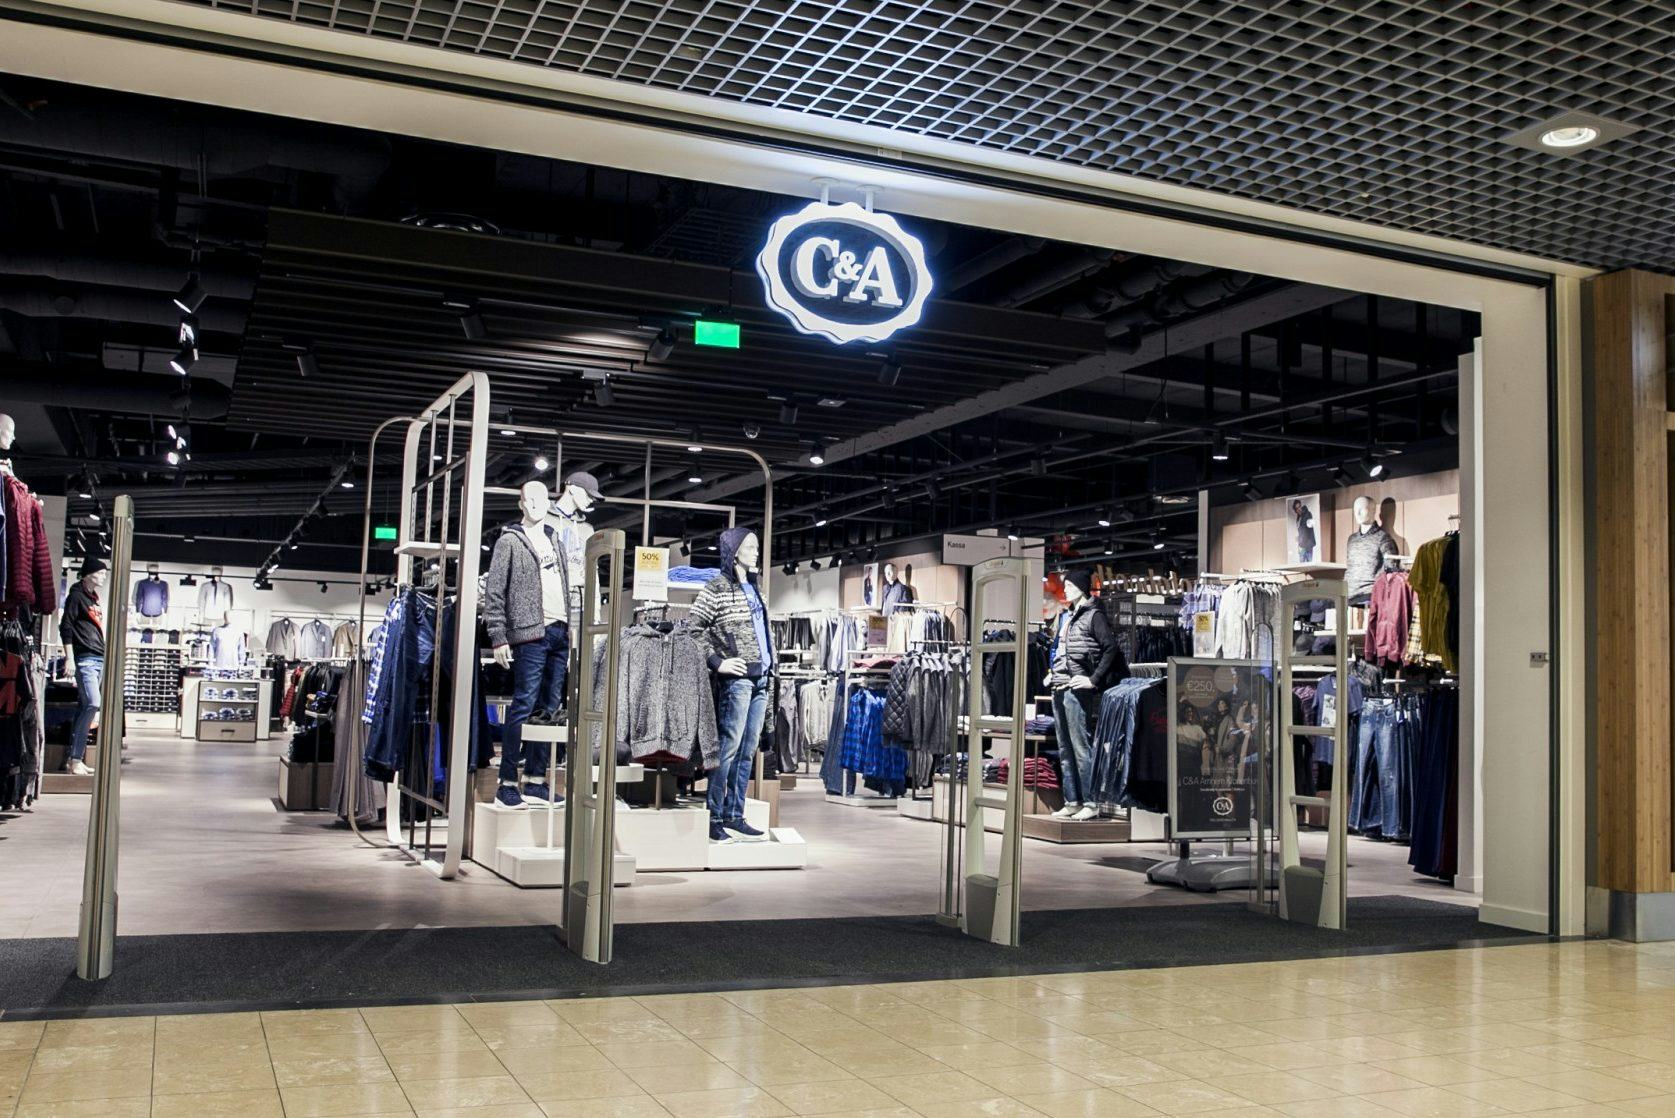 Belofte Leeg de prullenbak luchthaven Zeven vragen over krimp van modeketen C&A